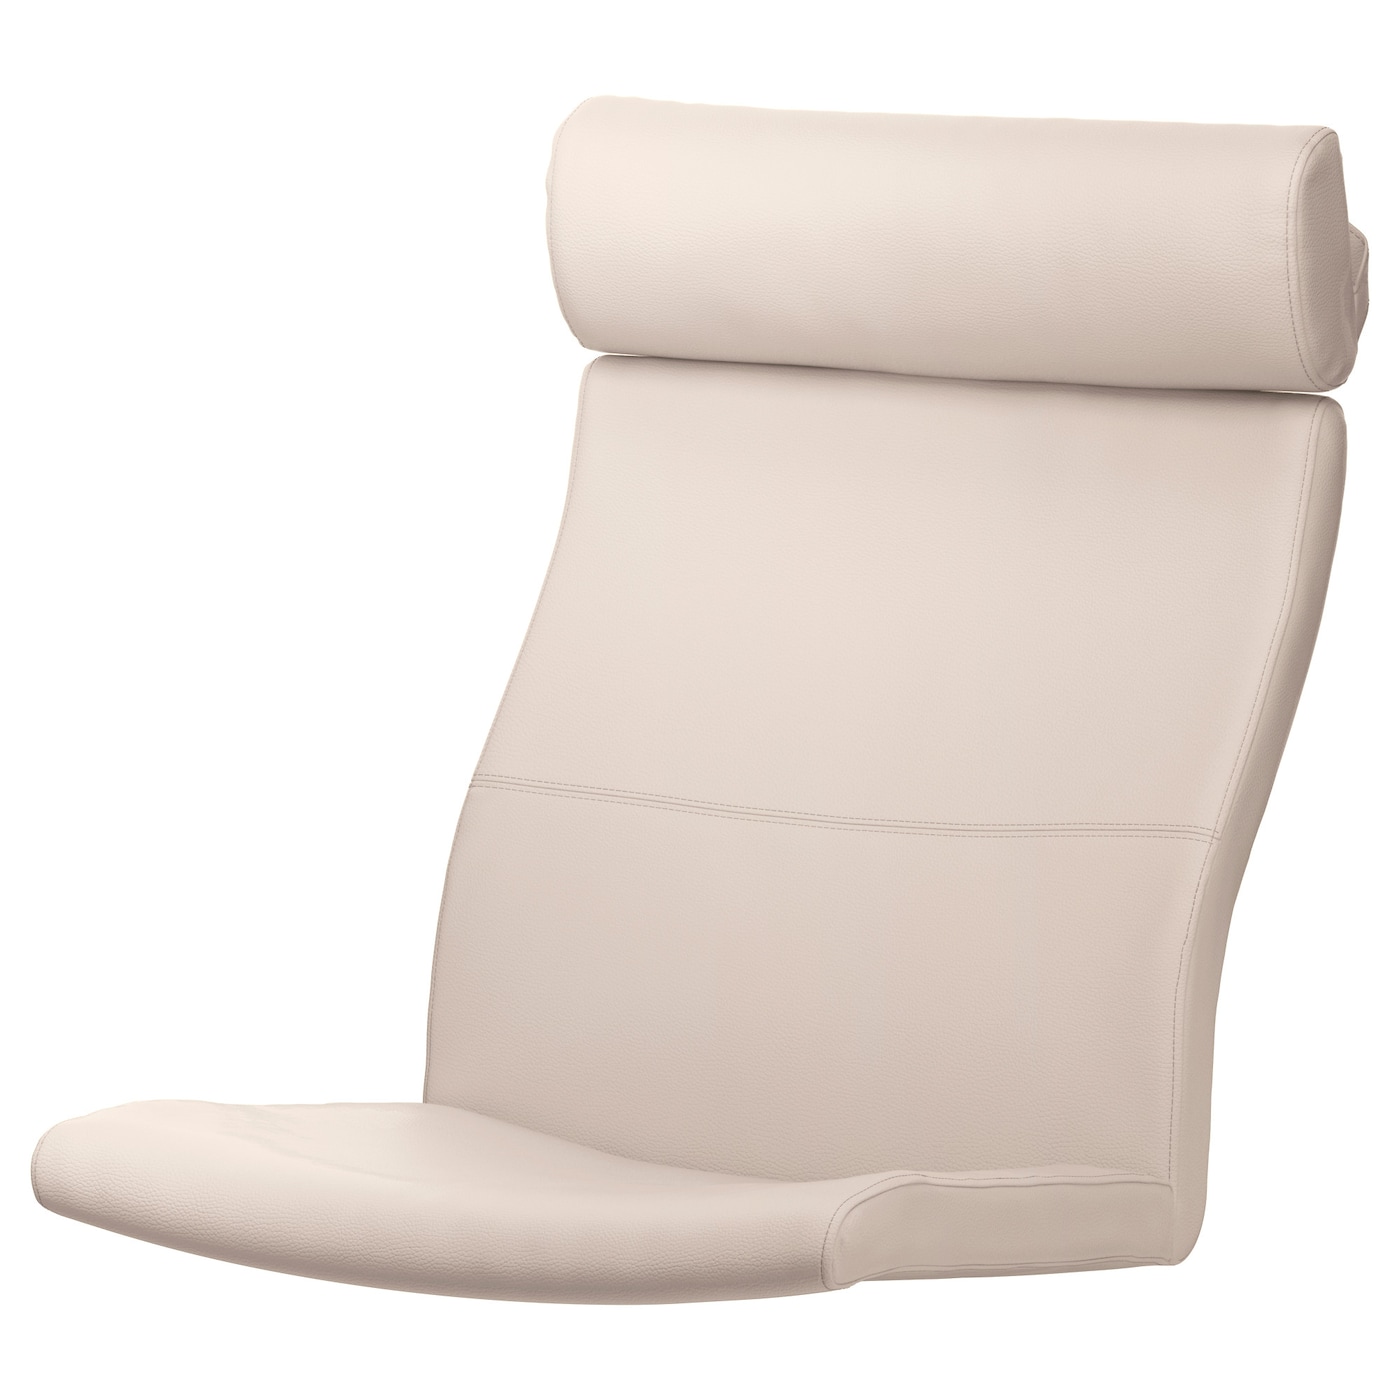 Подушка на кресло - POÄNG /POANG IKEA /  ПОЭНГ ИКЕА,  137х56 см, бежевый